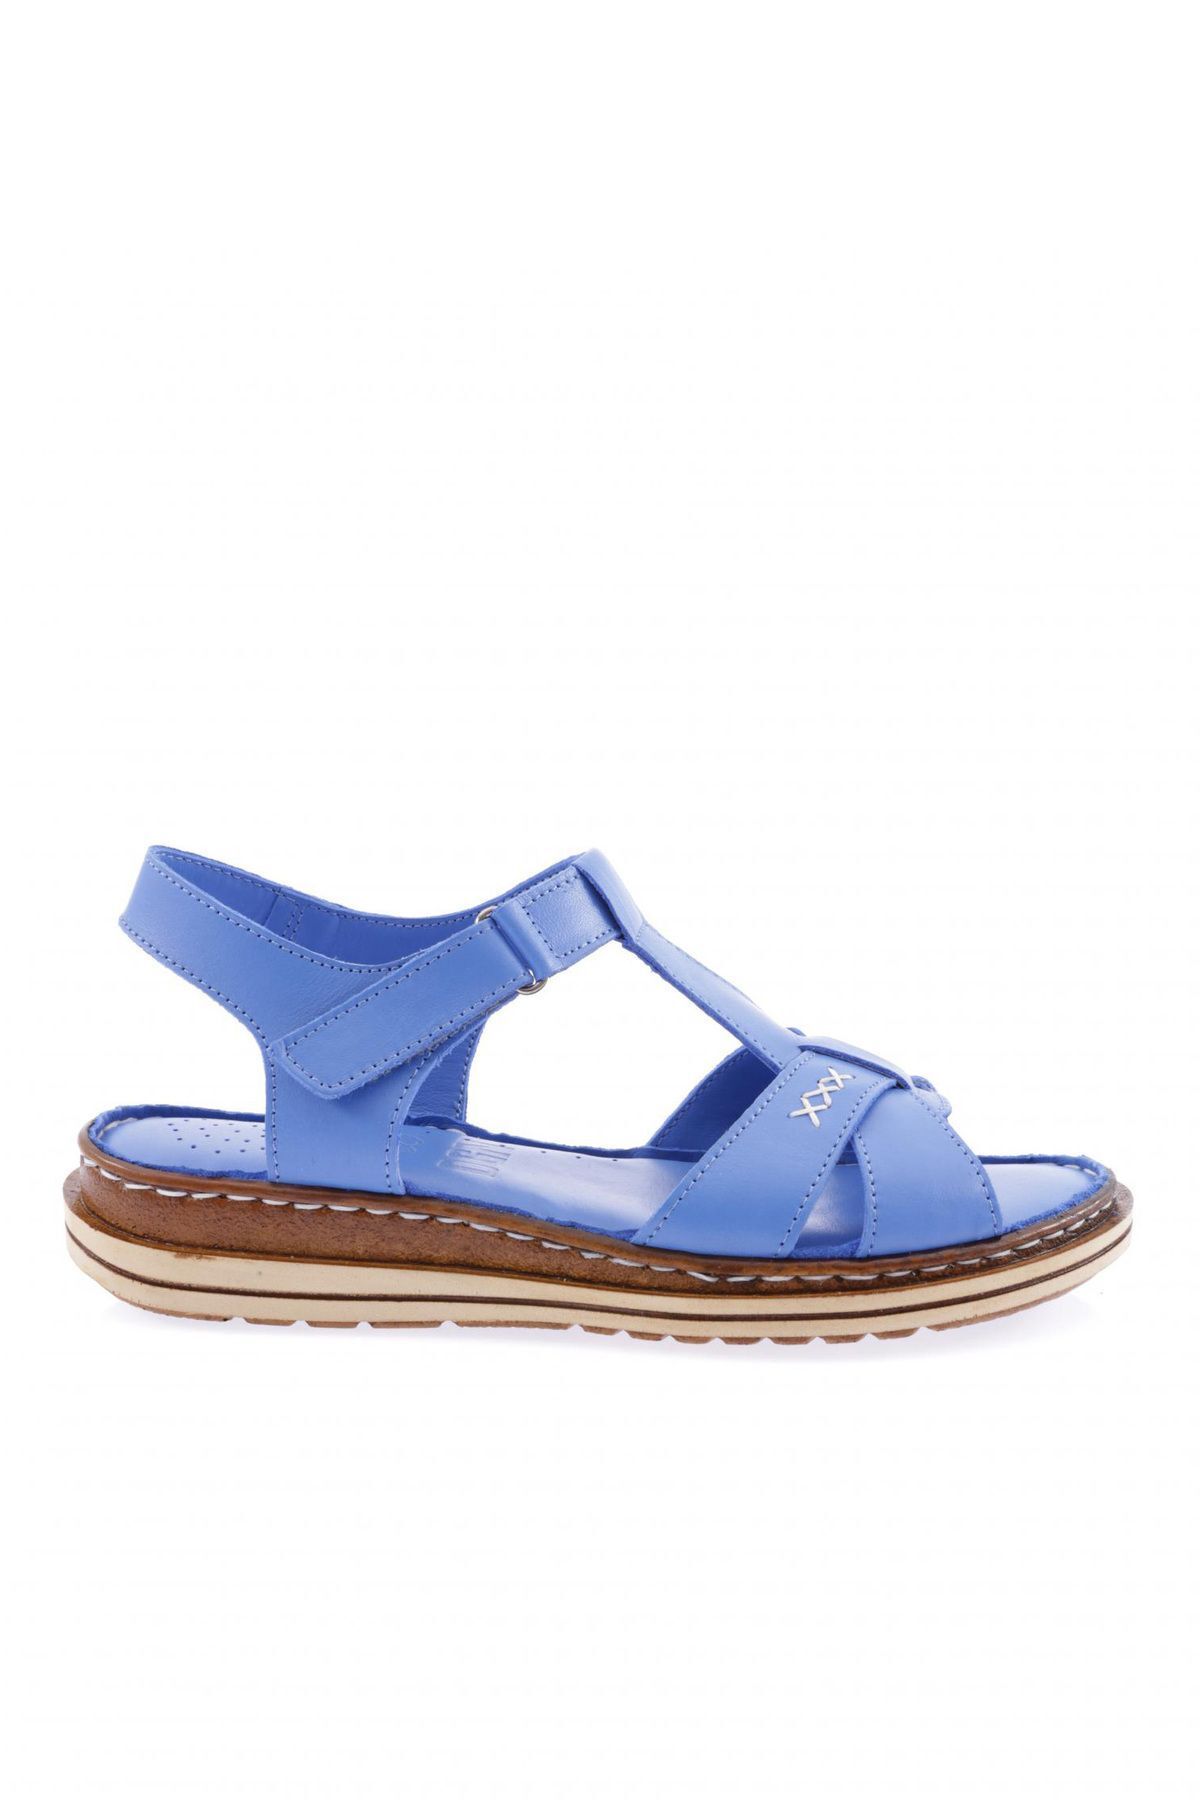 Dgn X002-23y Kadın Çapraz Bantlı Cirtli Sandalet Hakiki Deri Sax Mavi